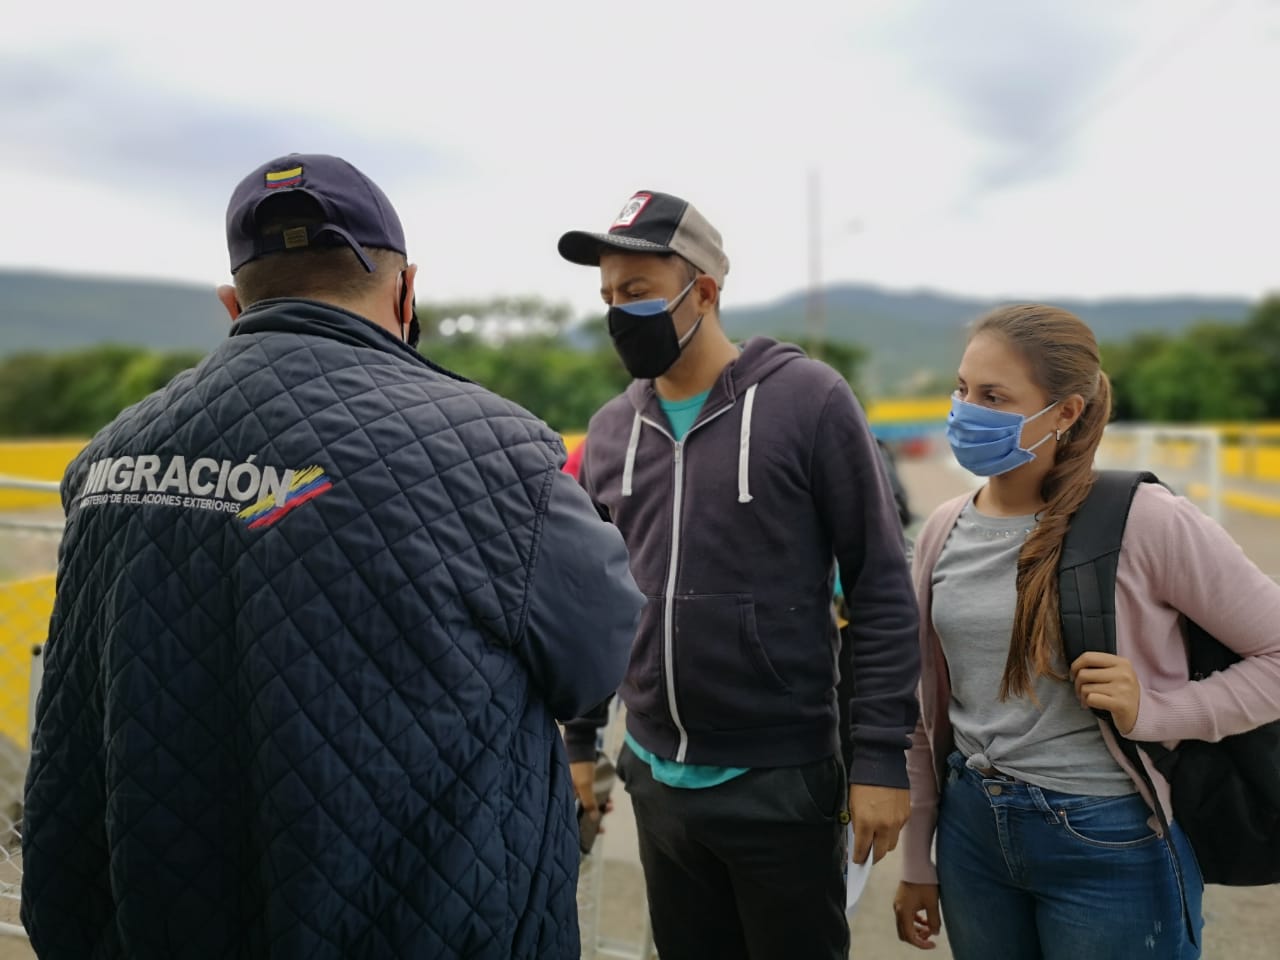 Funcionario de Migración Colombia revisa los documento de dos viajeros en la frontera Colombia - Venezuela. / Migración Colombia